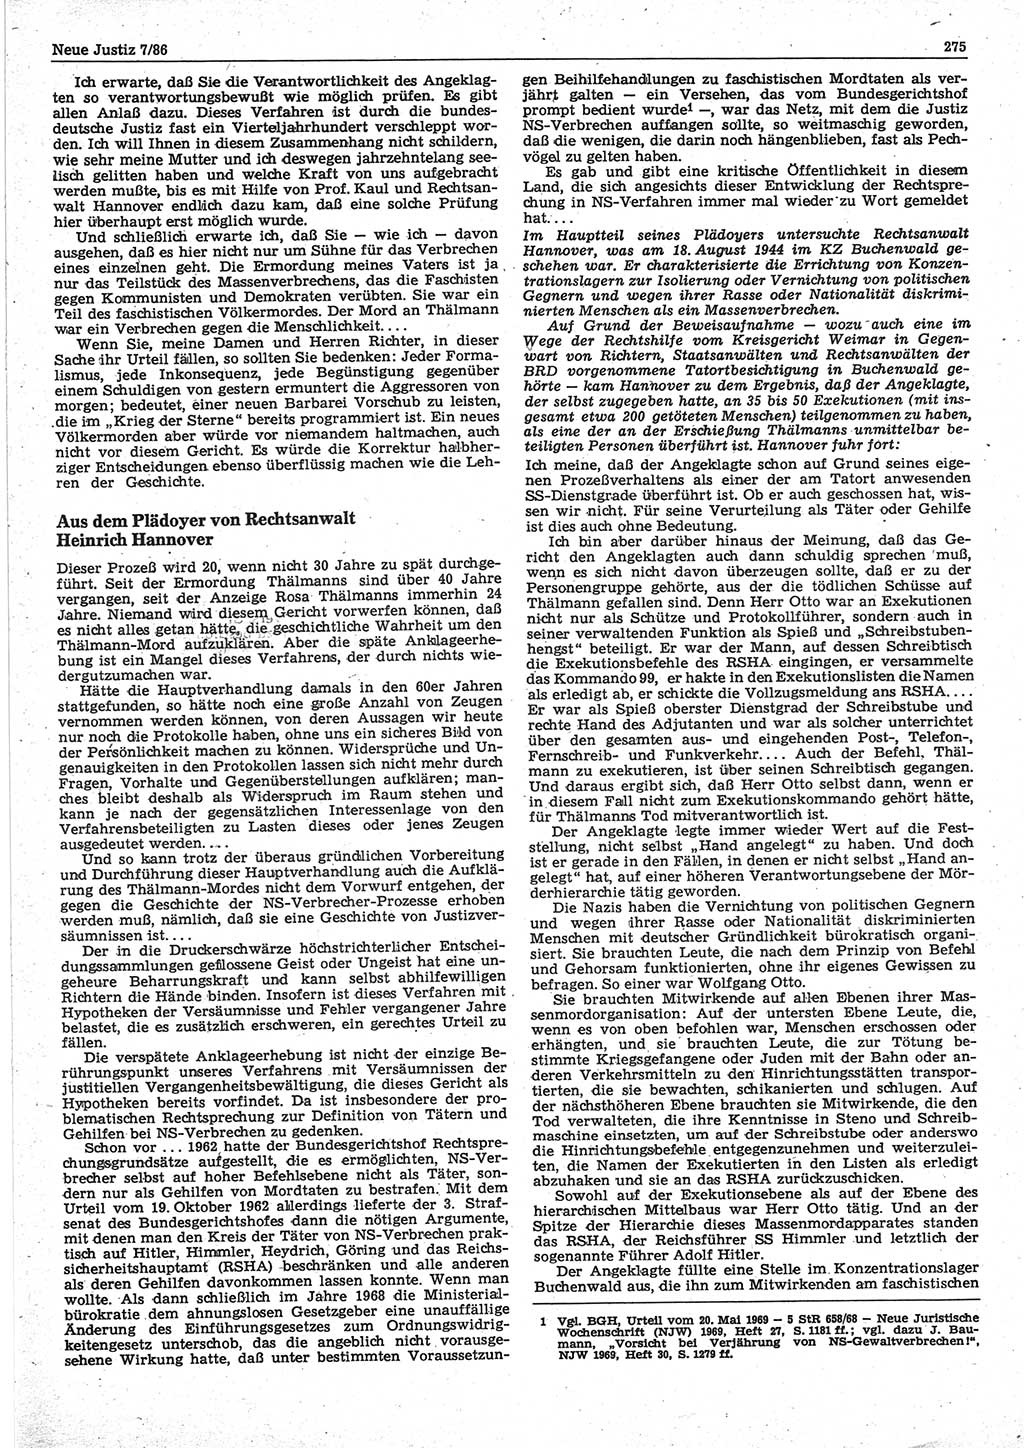 Neue Justiz (NJ), Zeitschrift für sozialistisches Recht und Gesetzlichkeit [Deutsche Demokratische Republik (DDR)], 40. Jahrgang 1986, Seite 275 (NJ DDR 1986, S. 275)